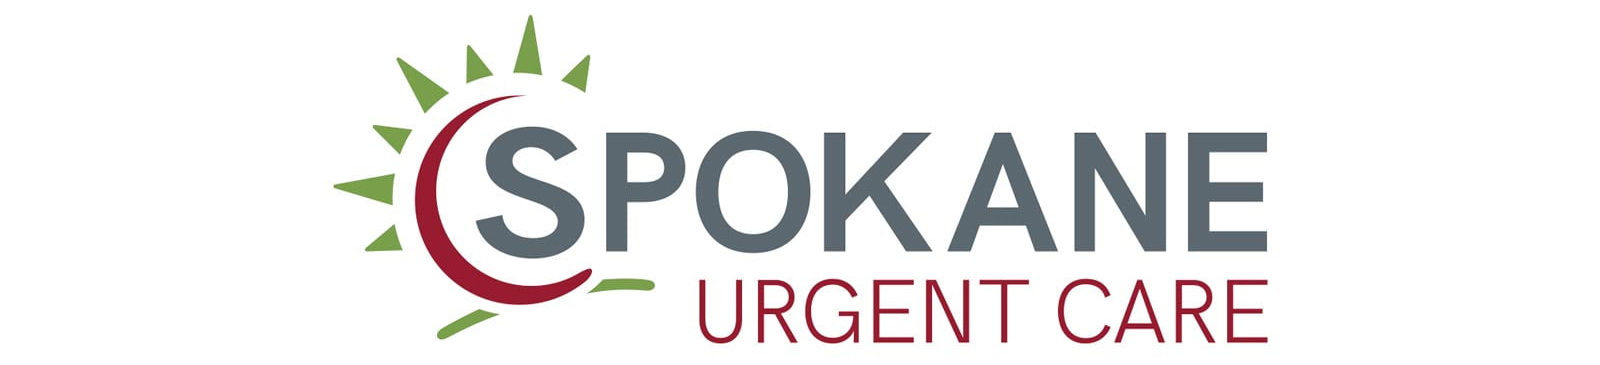 Spokane Urgent Care